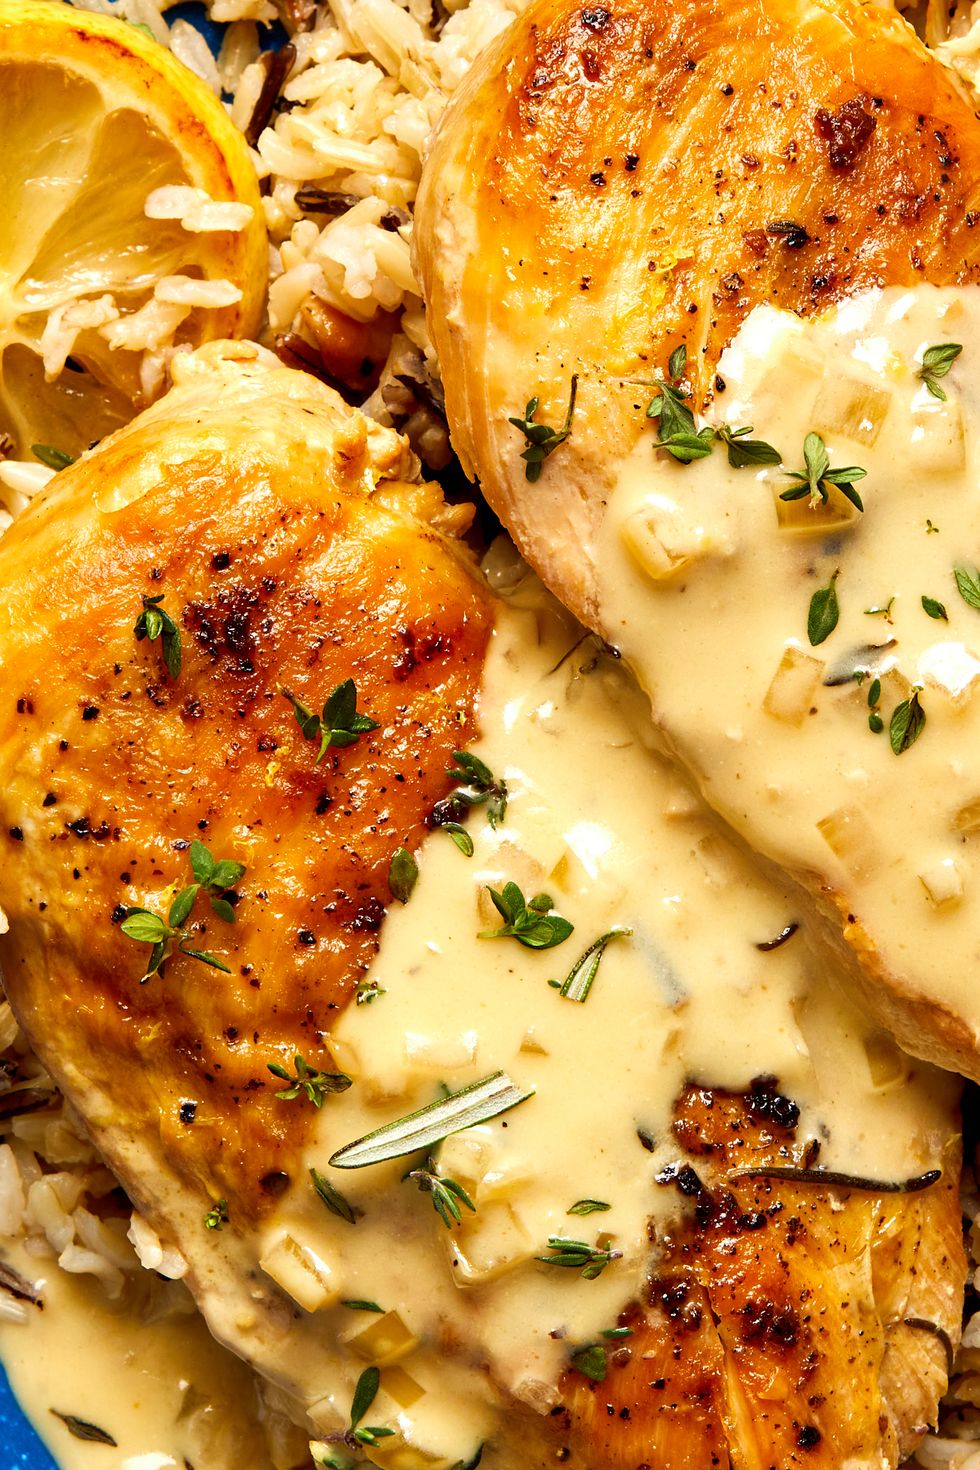 Easy Crockpot Chicken Breast Recipes